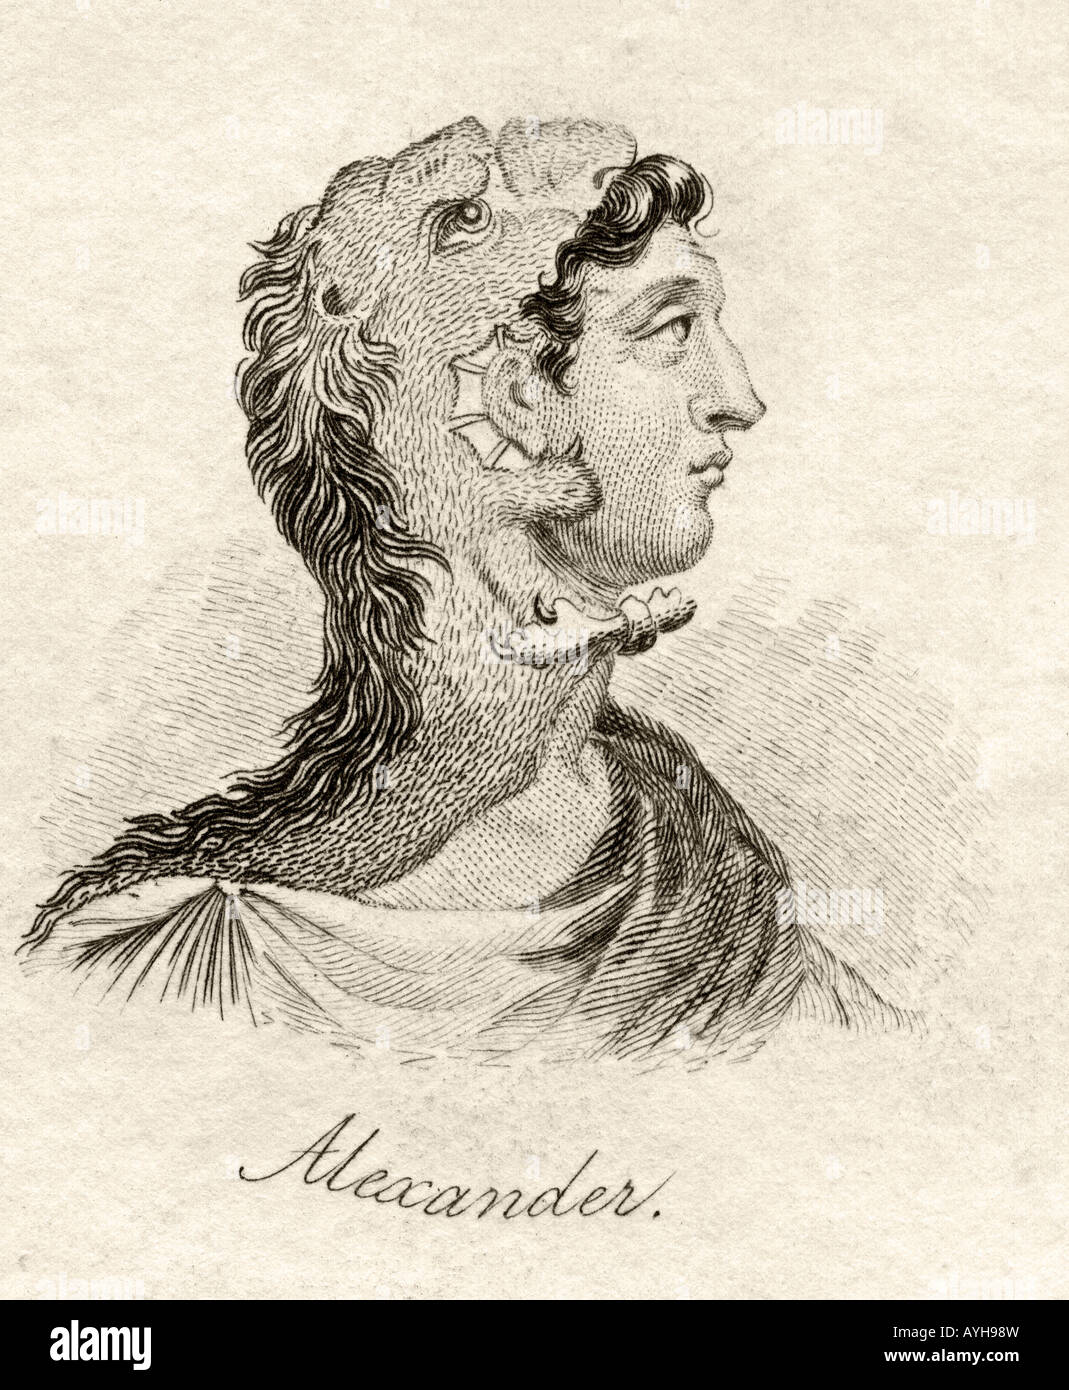 Alexander der große, 356BC - 323BC. Griechischer König von Mazedonien. Aus dem Buch Crabb's Historical Dictionary, erschienen 1825. Stockfoto